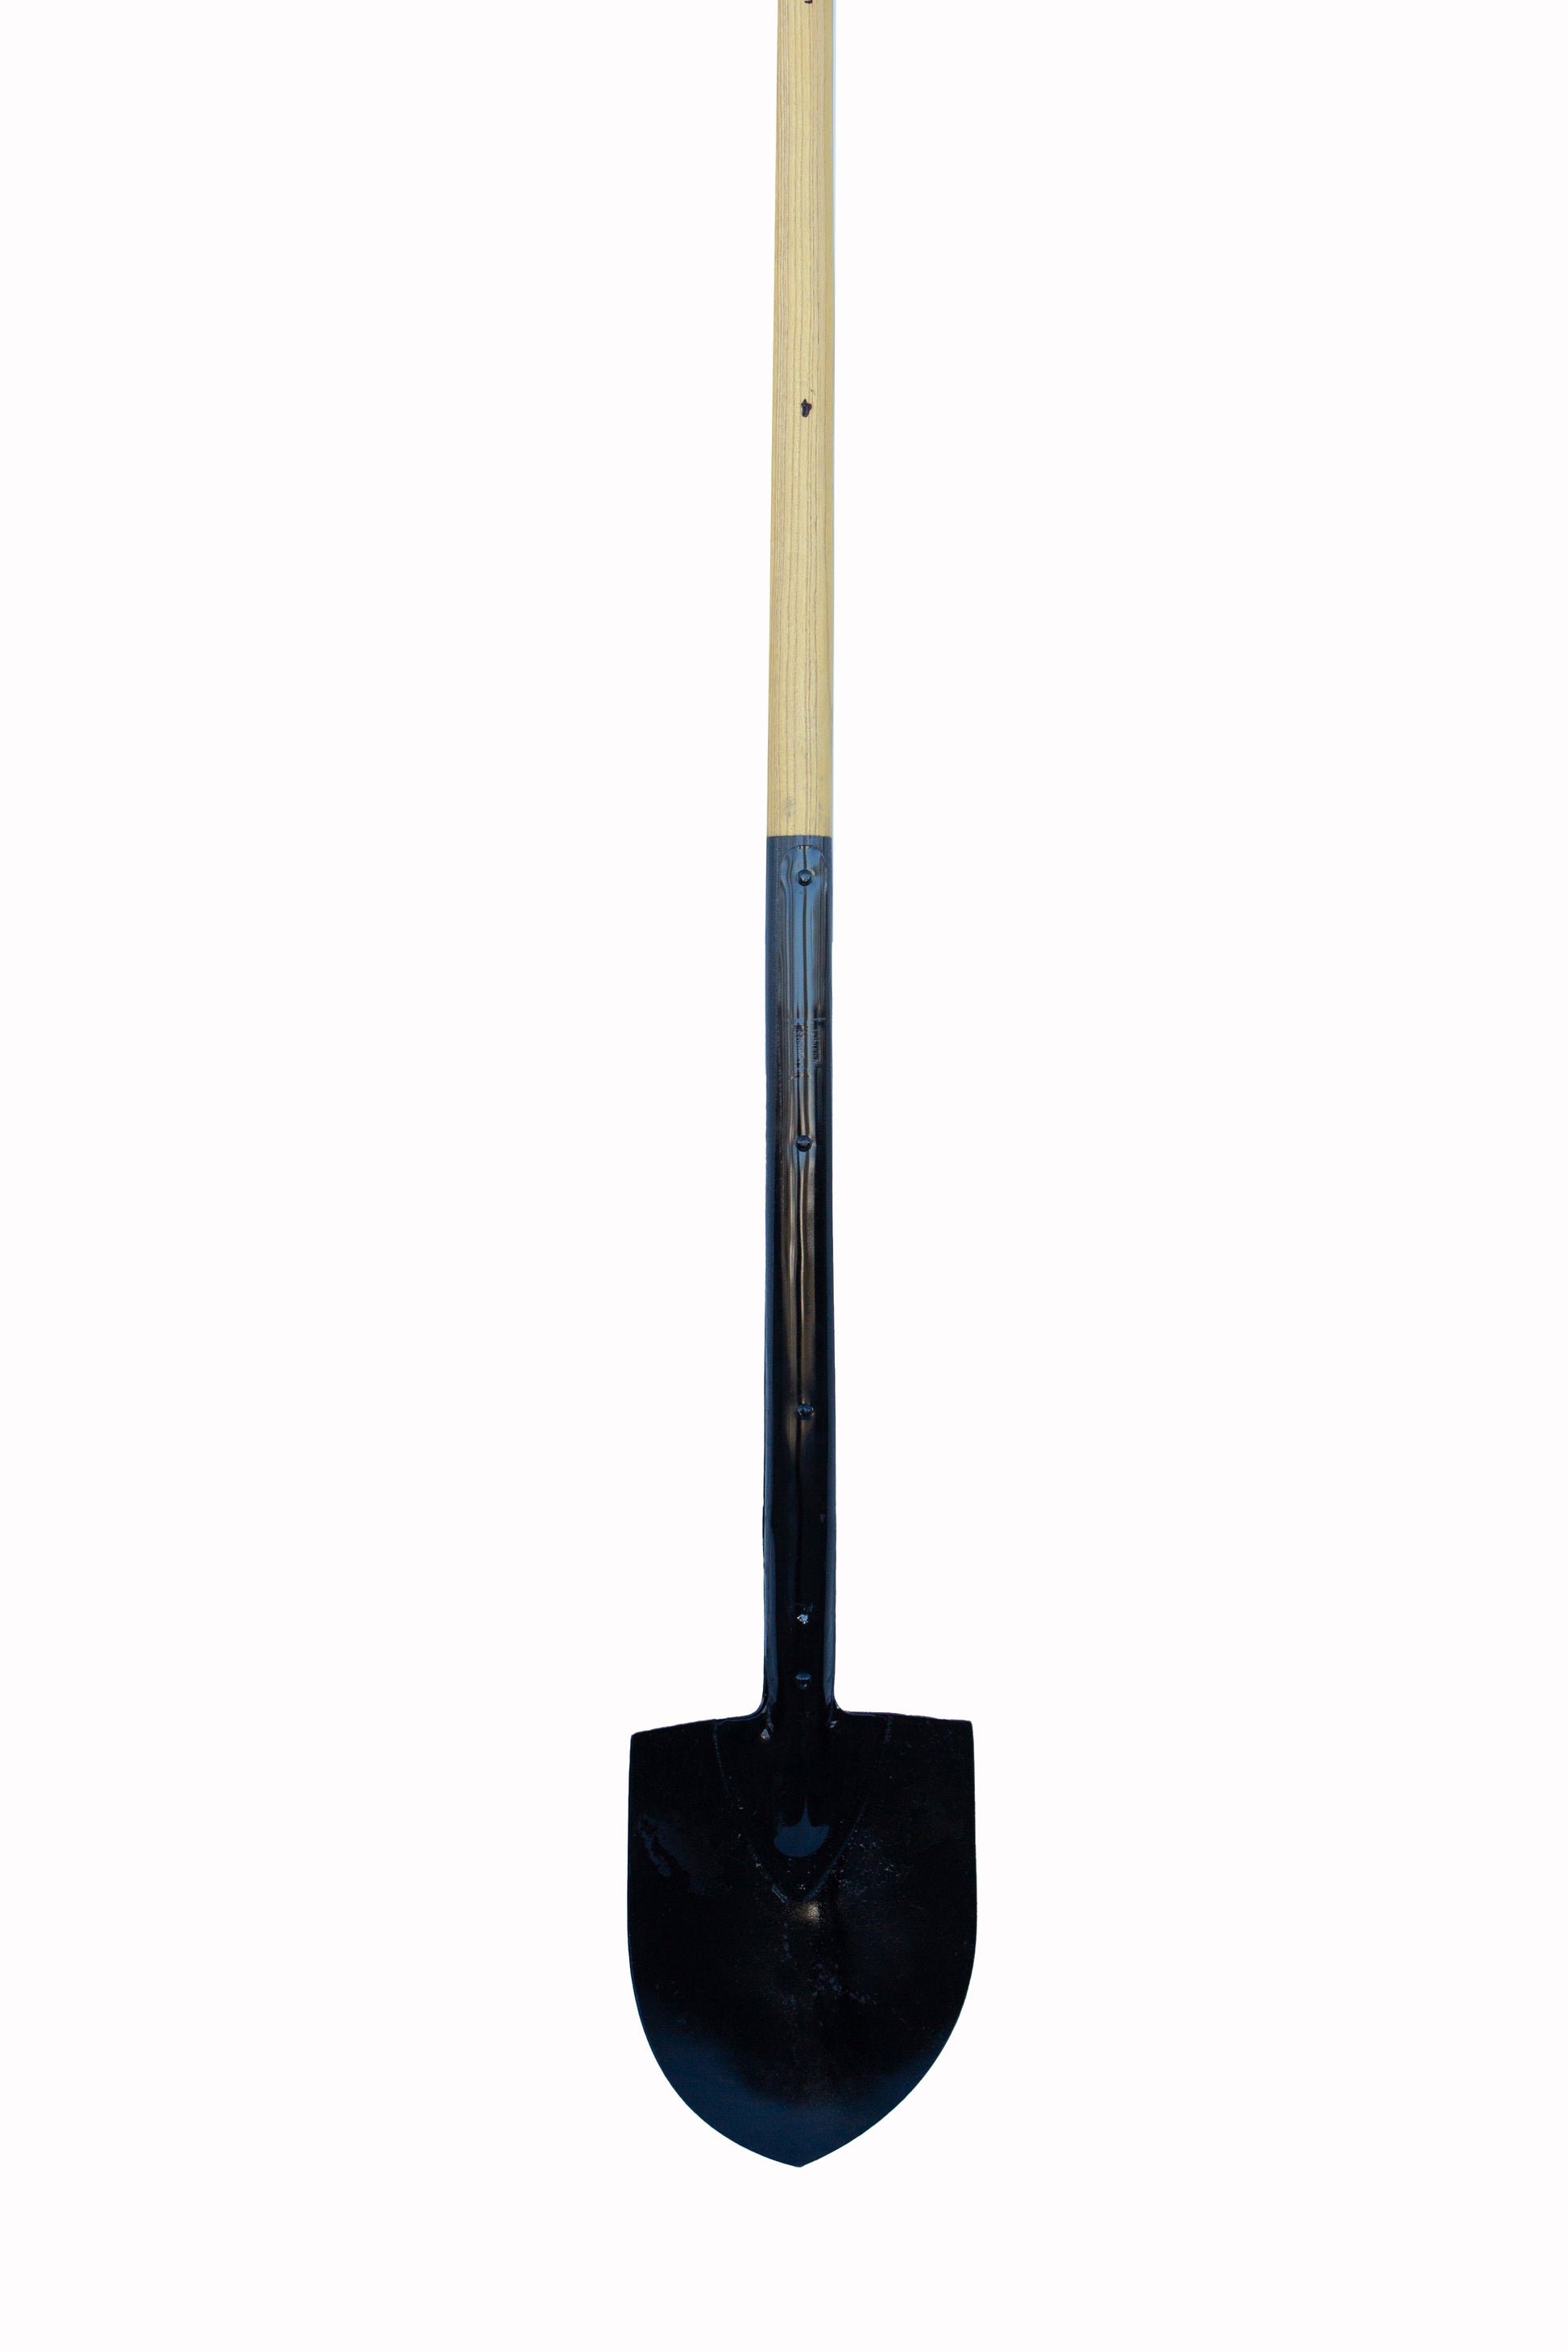 Oshkosh Tools 6 inch straight shovel blade